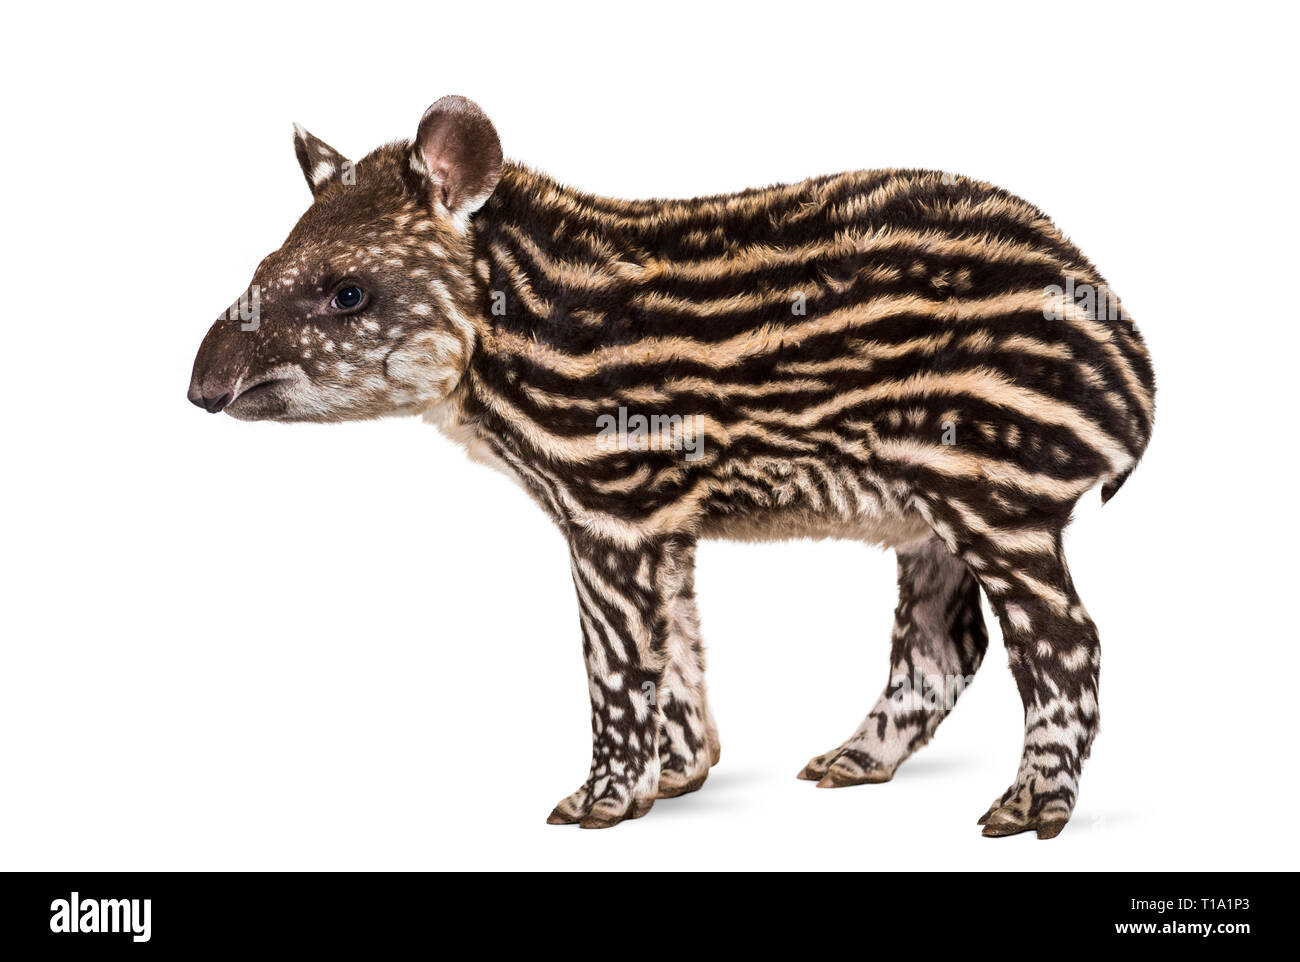 Mese vecchio tapiro brasiliano in piedi di fronte a uno sfondo bianco Foto Stock